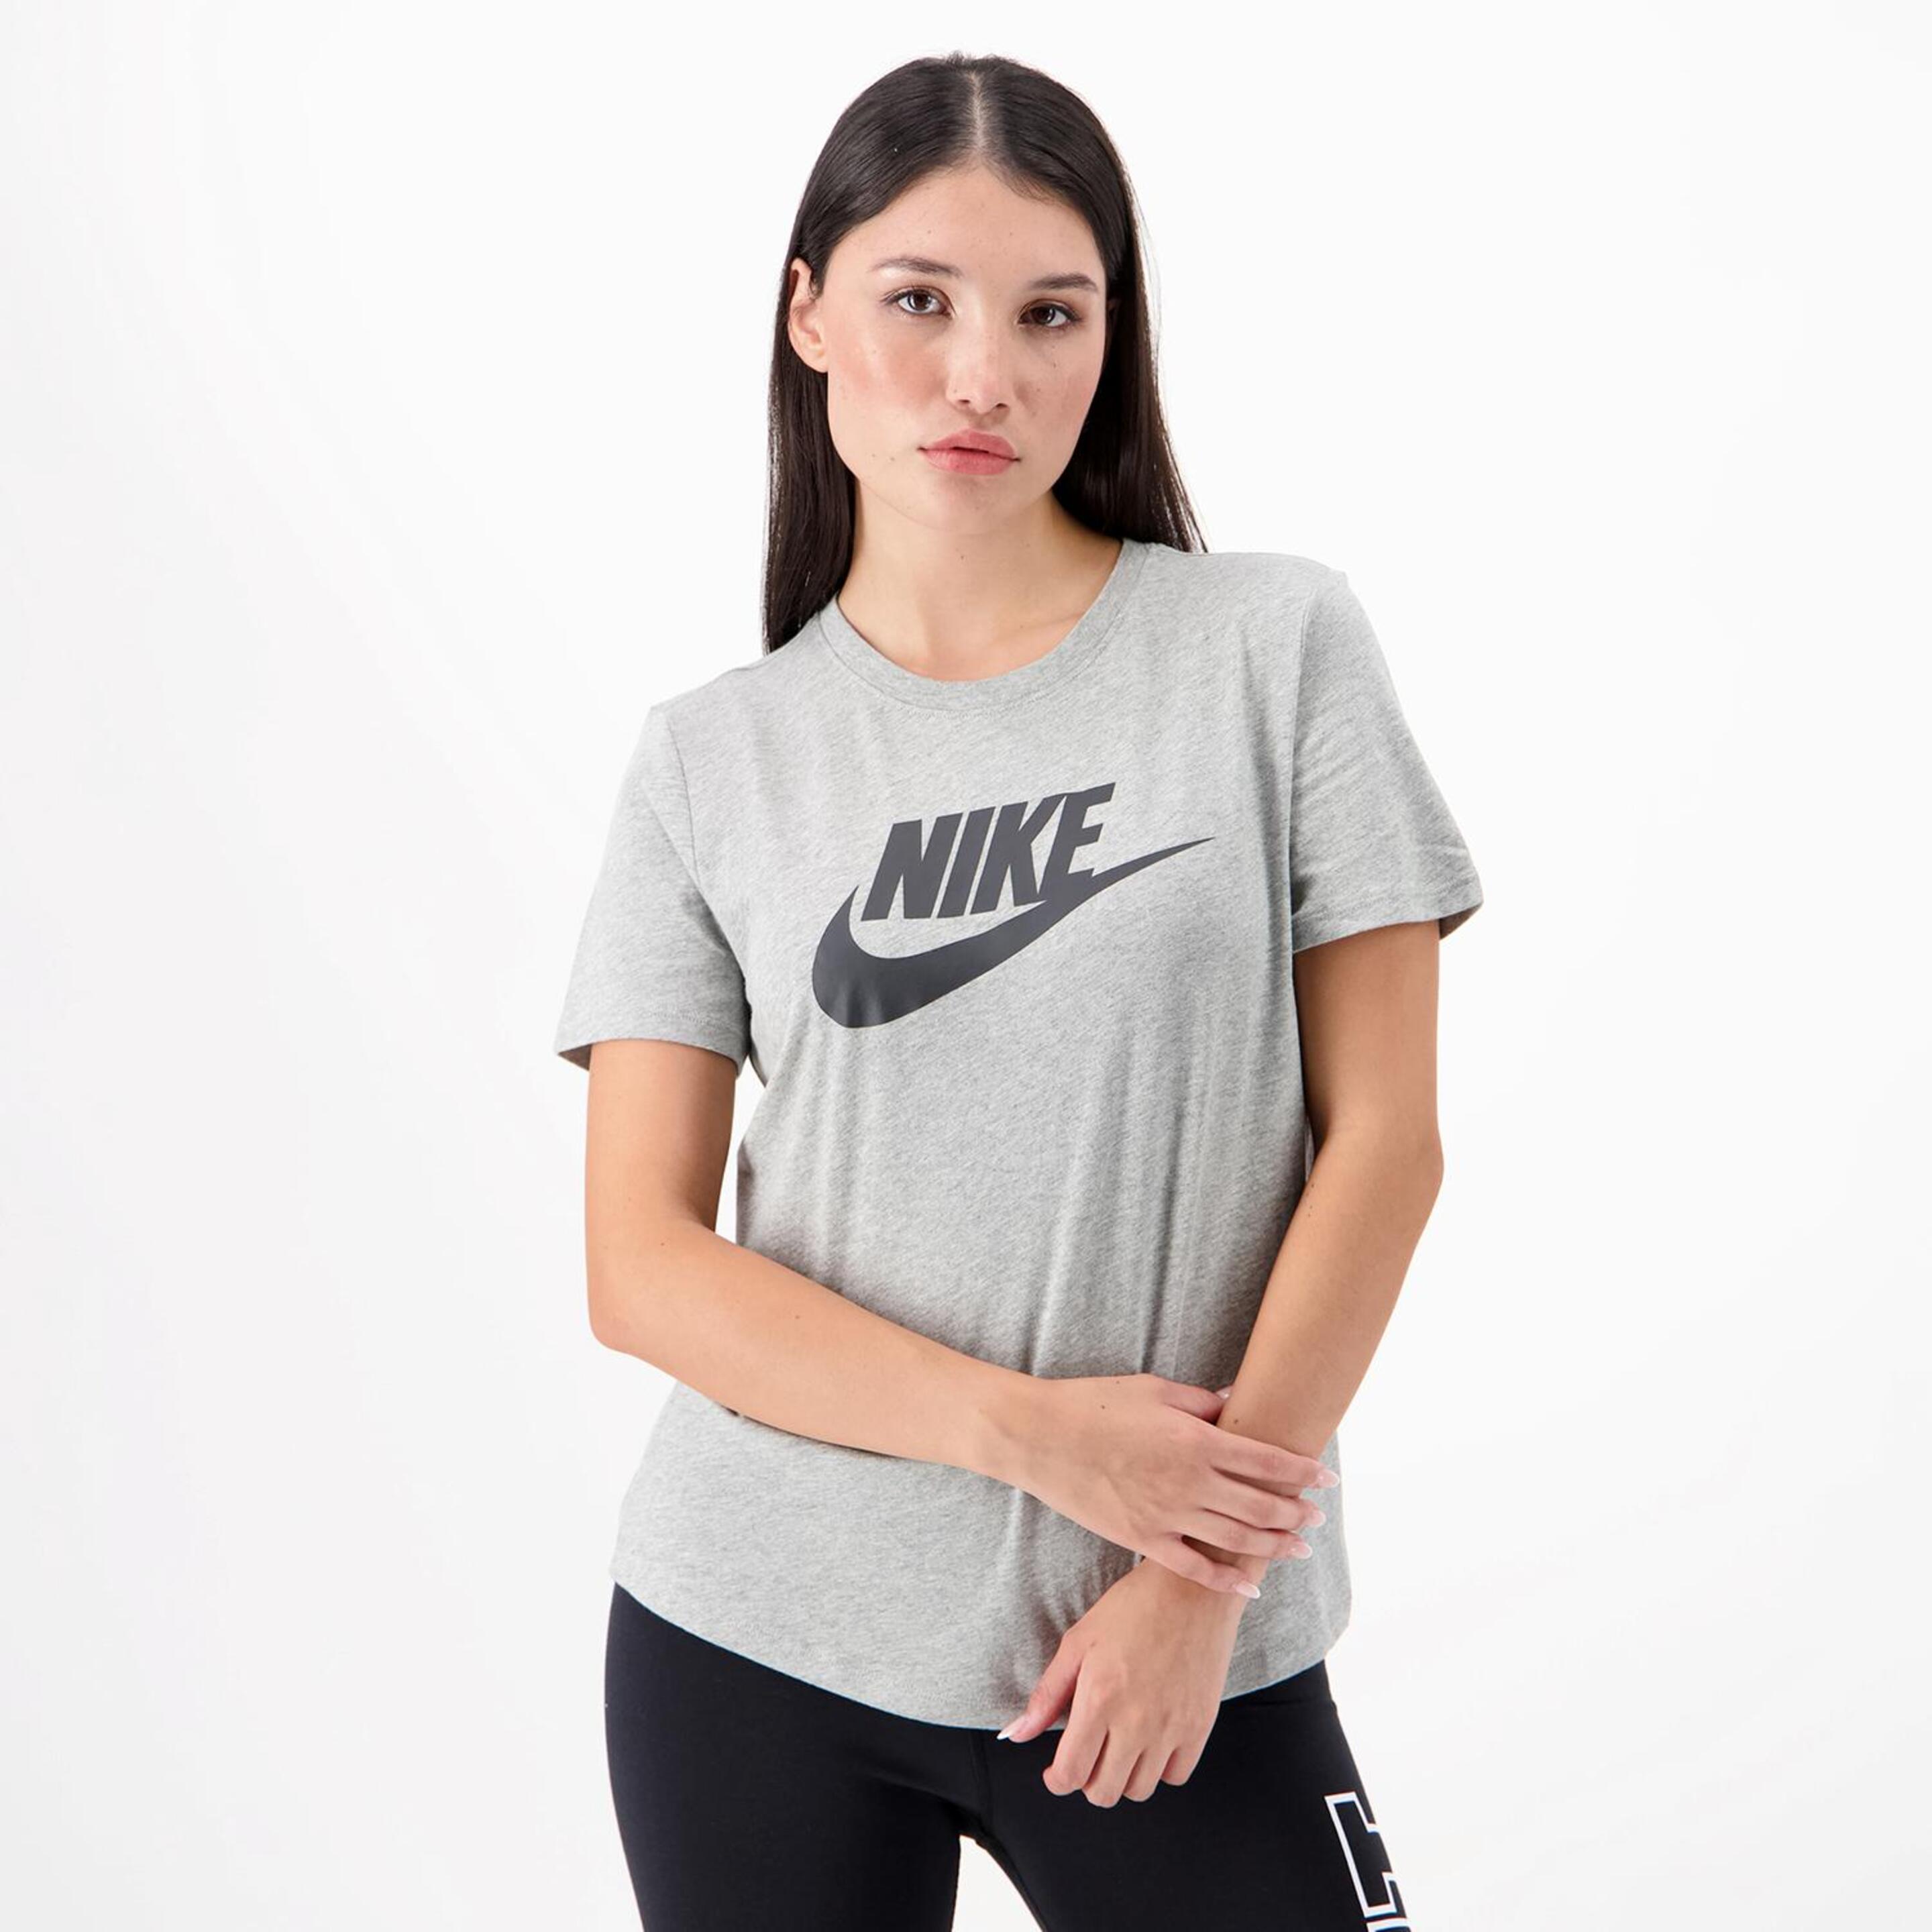 Camiseta Nike - gris - Camiseta Mujer